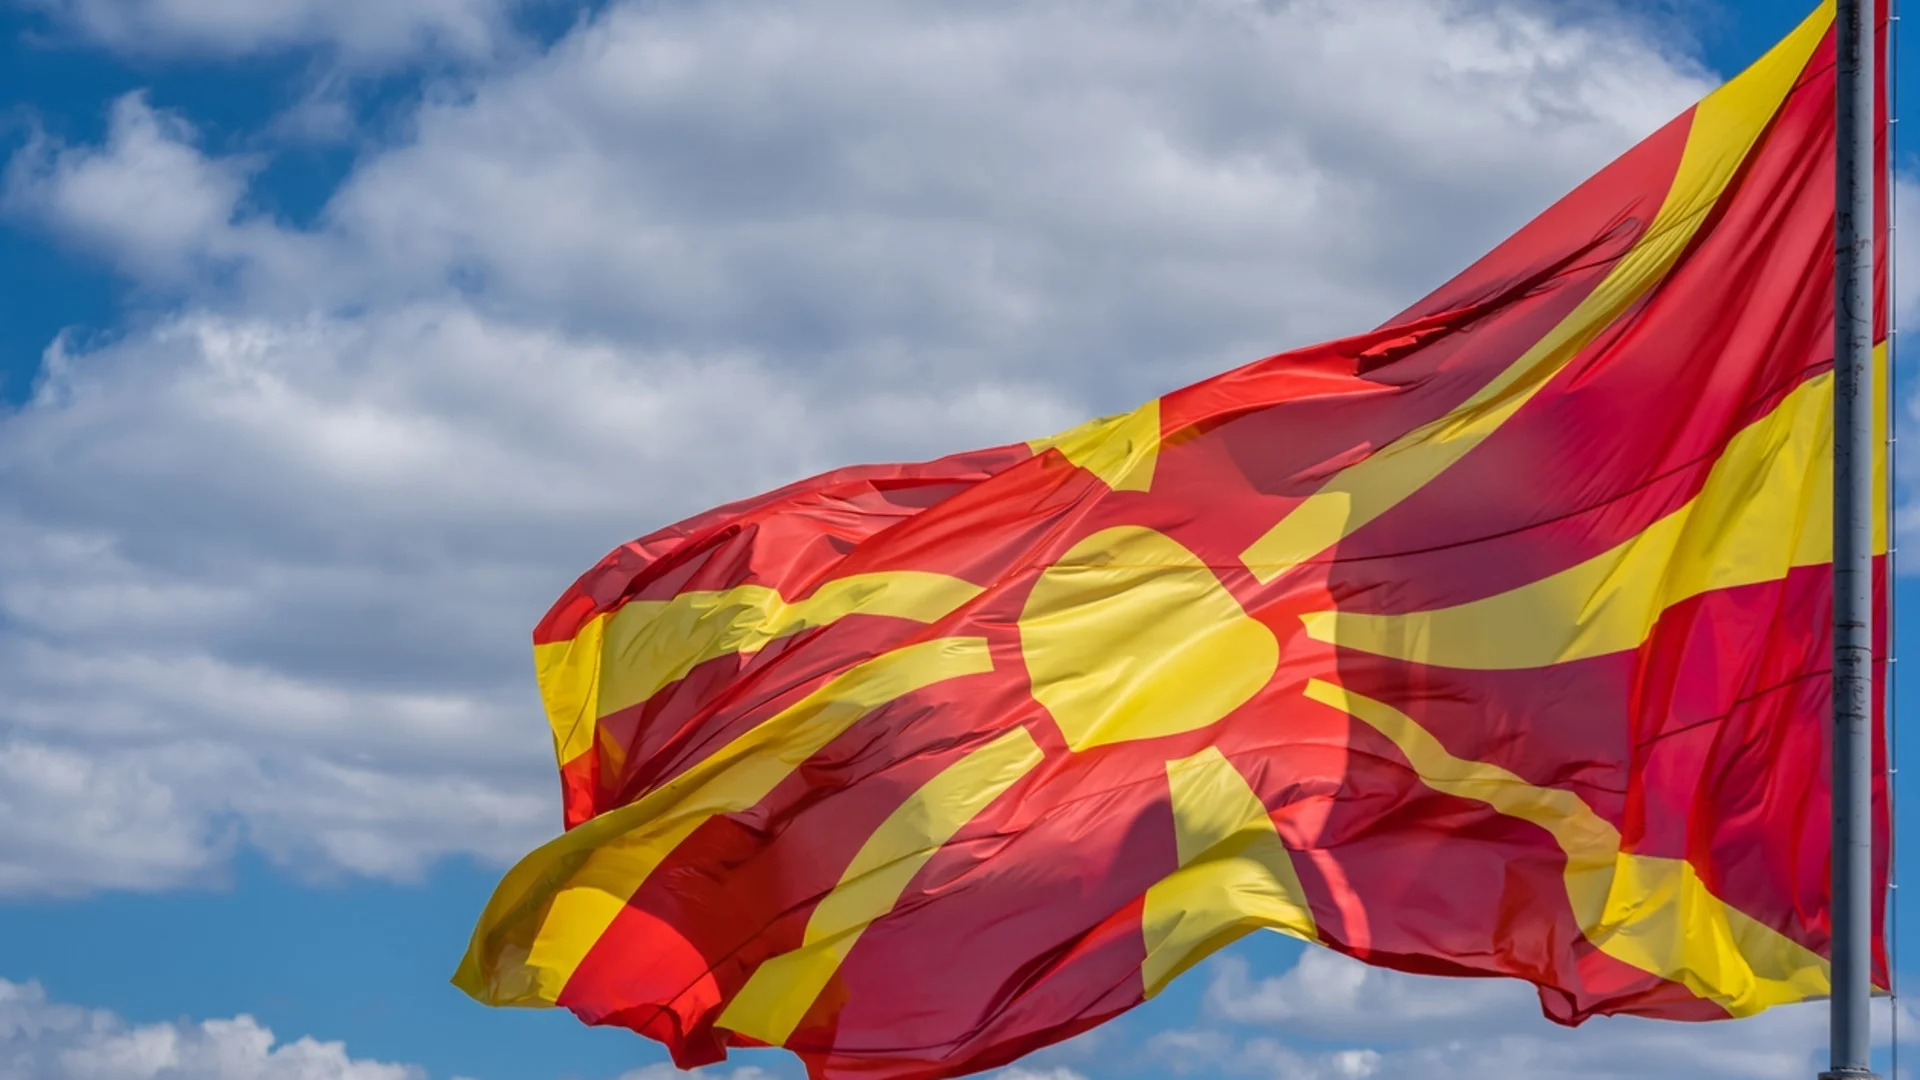 Познахме: Скопие направи крачка назад, тоест - към Тито